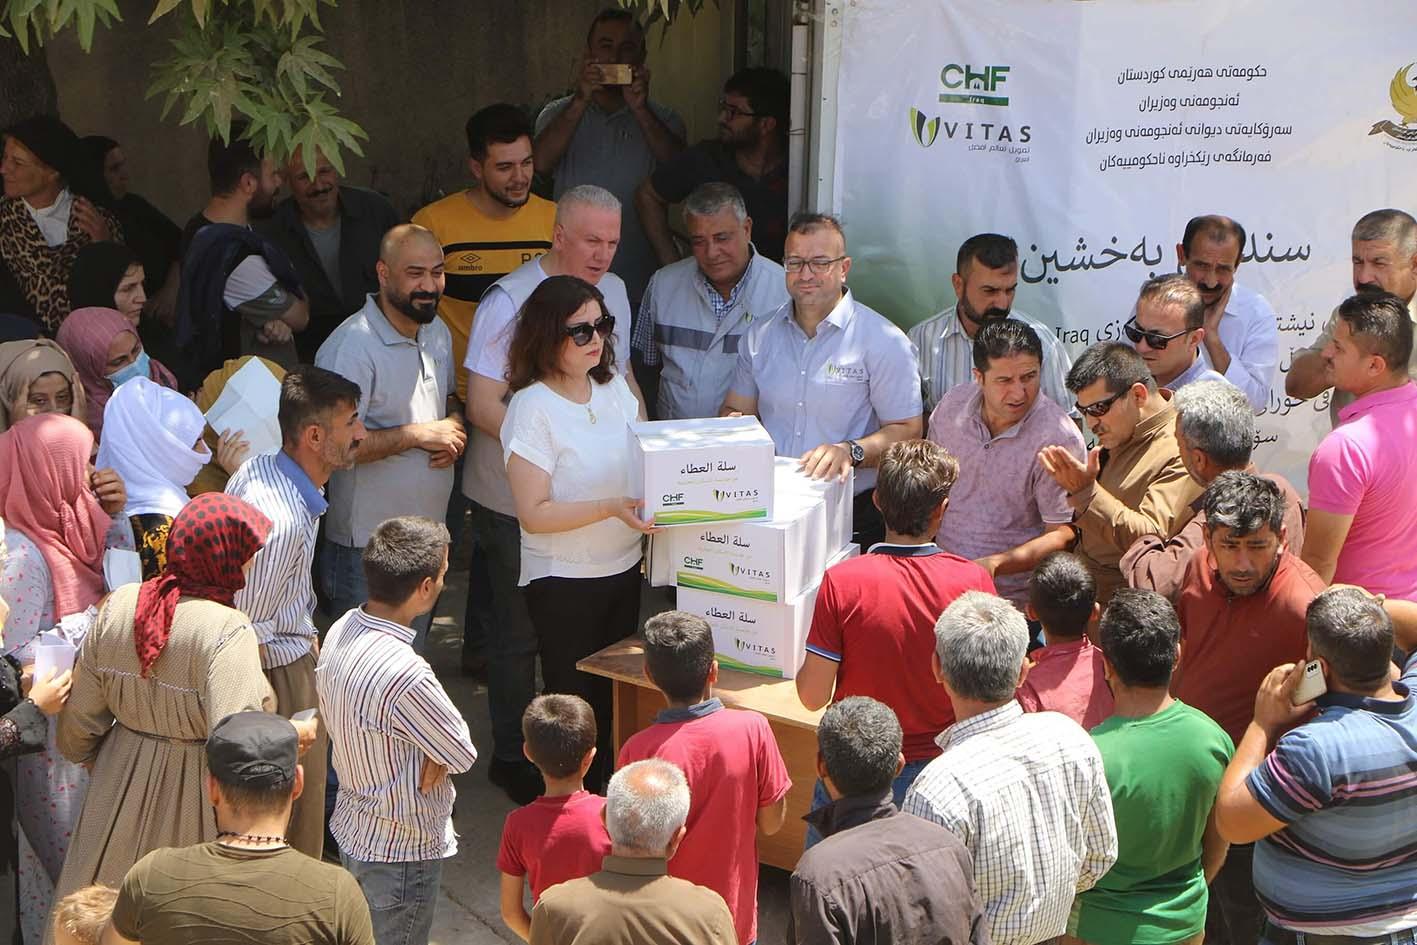 community events - توزيع 300 سلة غذائية على العوائل المحتاجة في محافظة اربيل